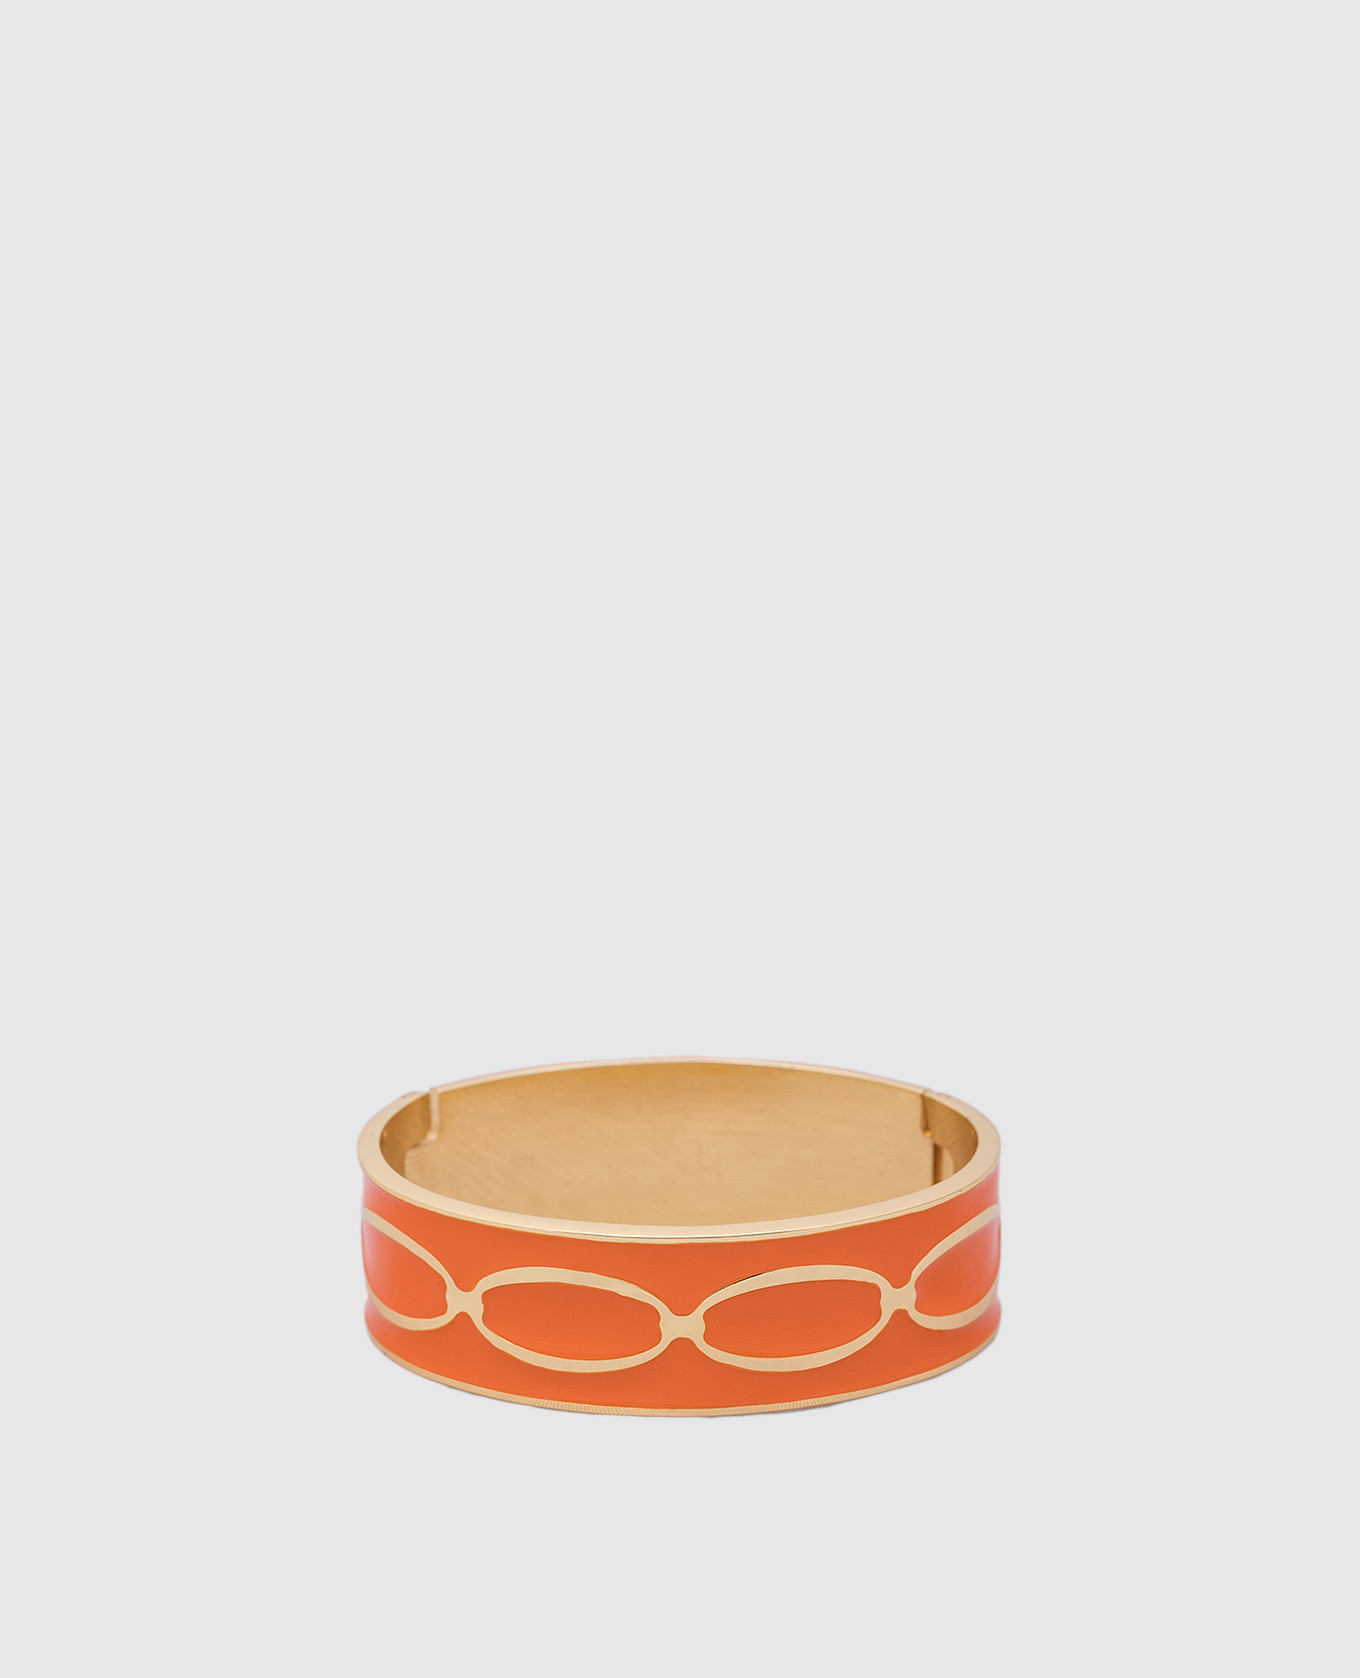 Оранжевый браслет Knot с покрытием 24-каратным золотом.